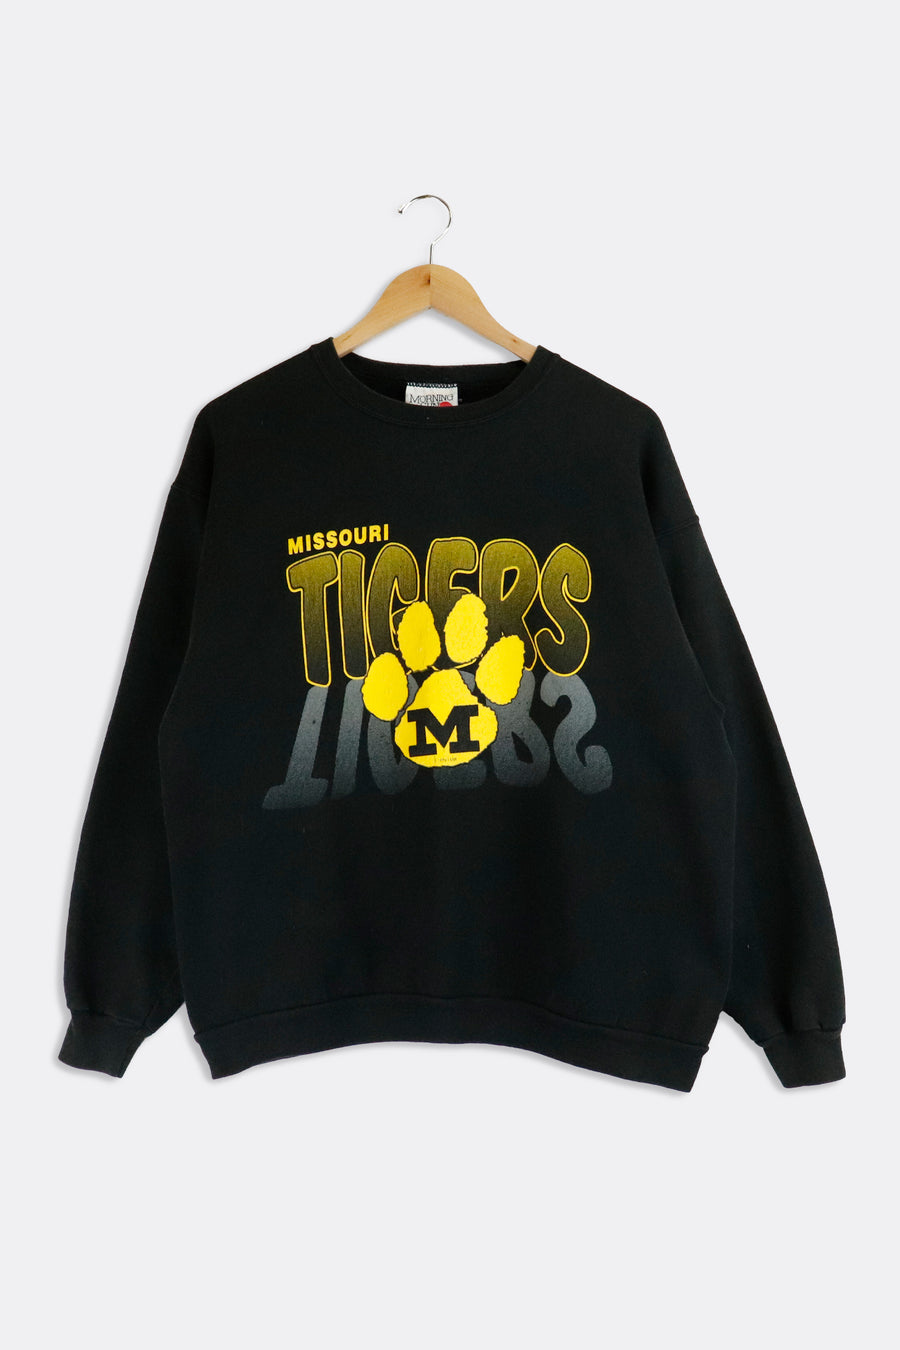 Vintage Missouri Tigers Sweatshirt Sz L